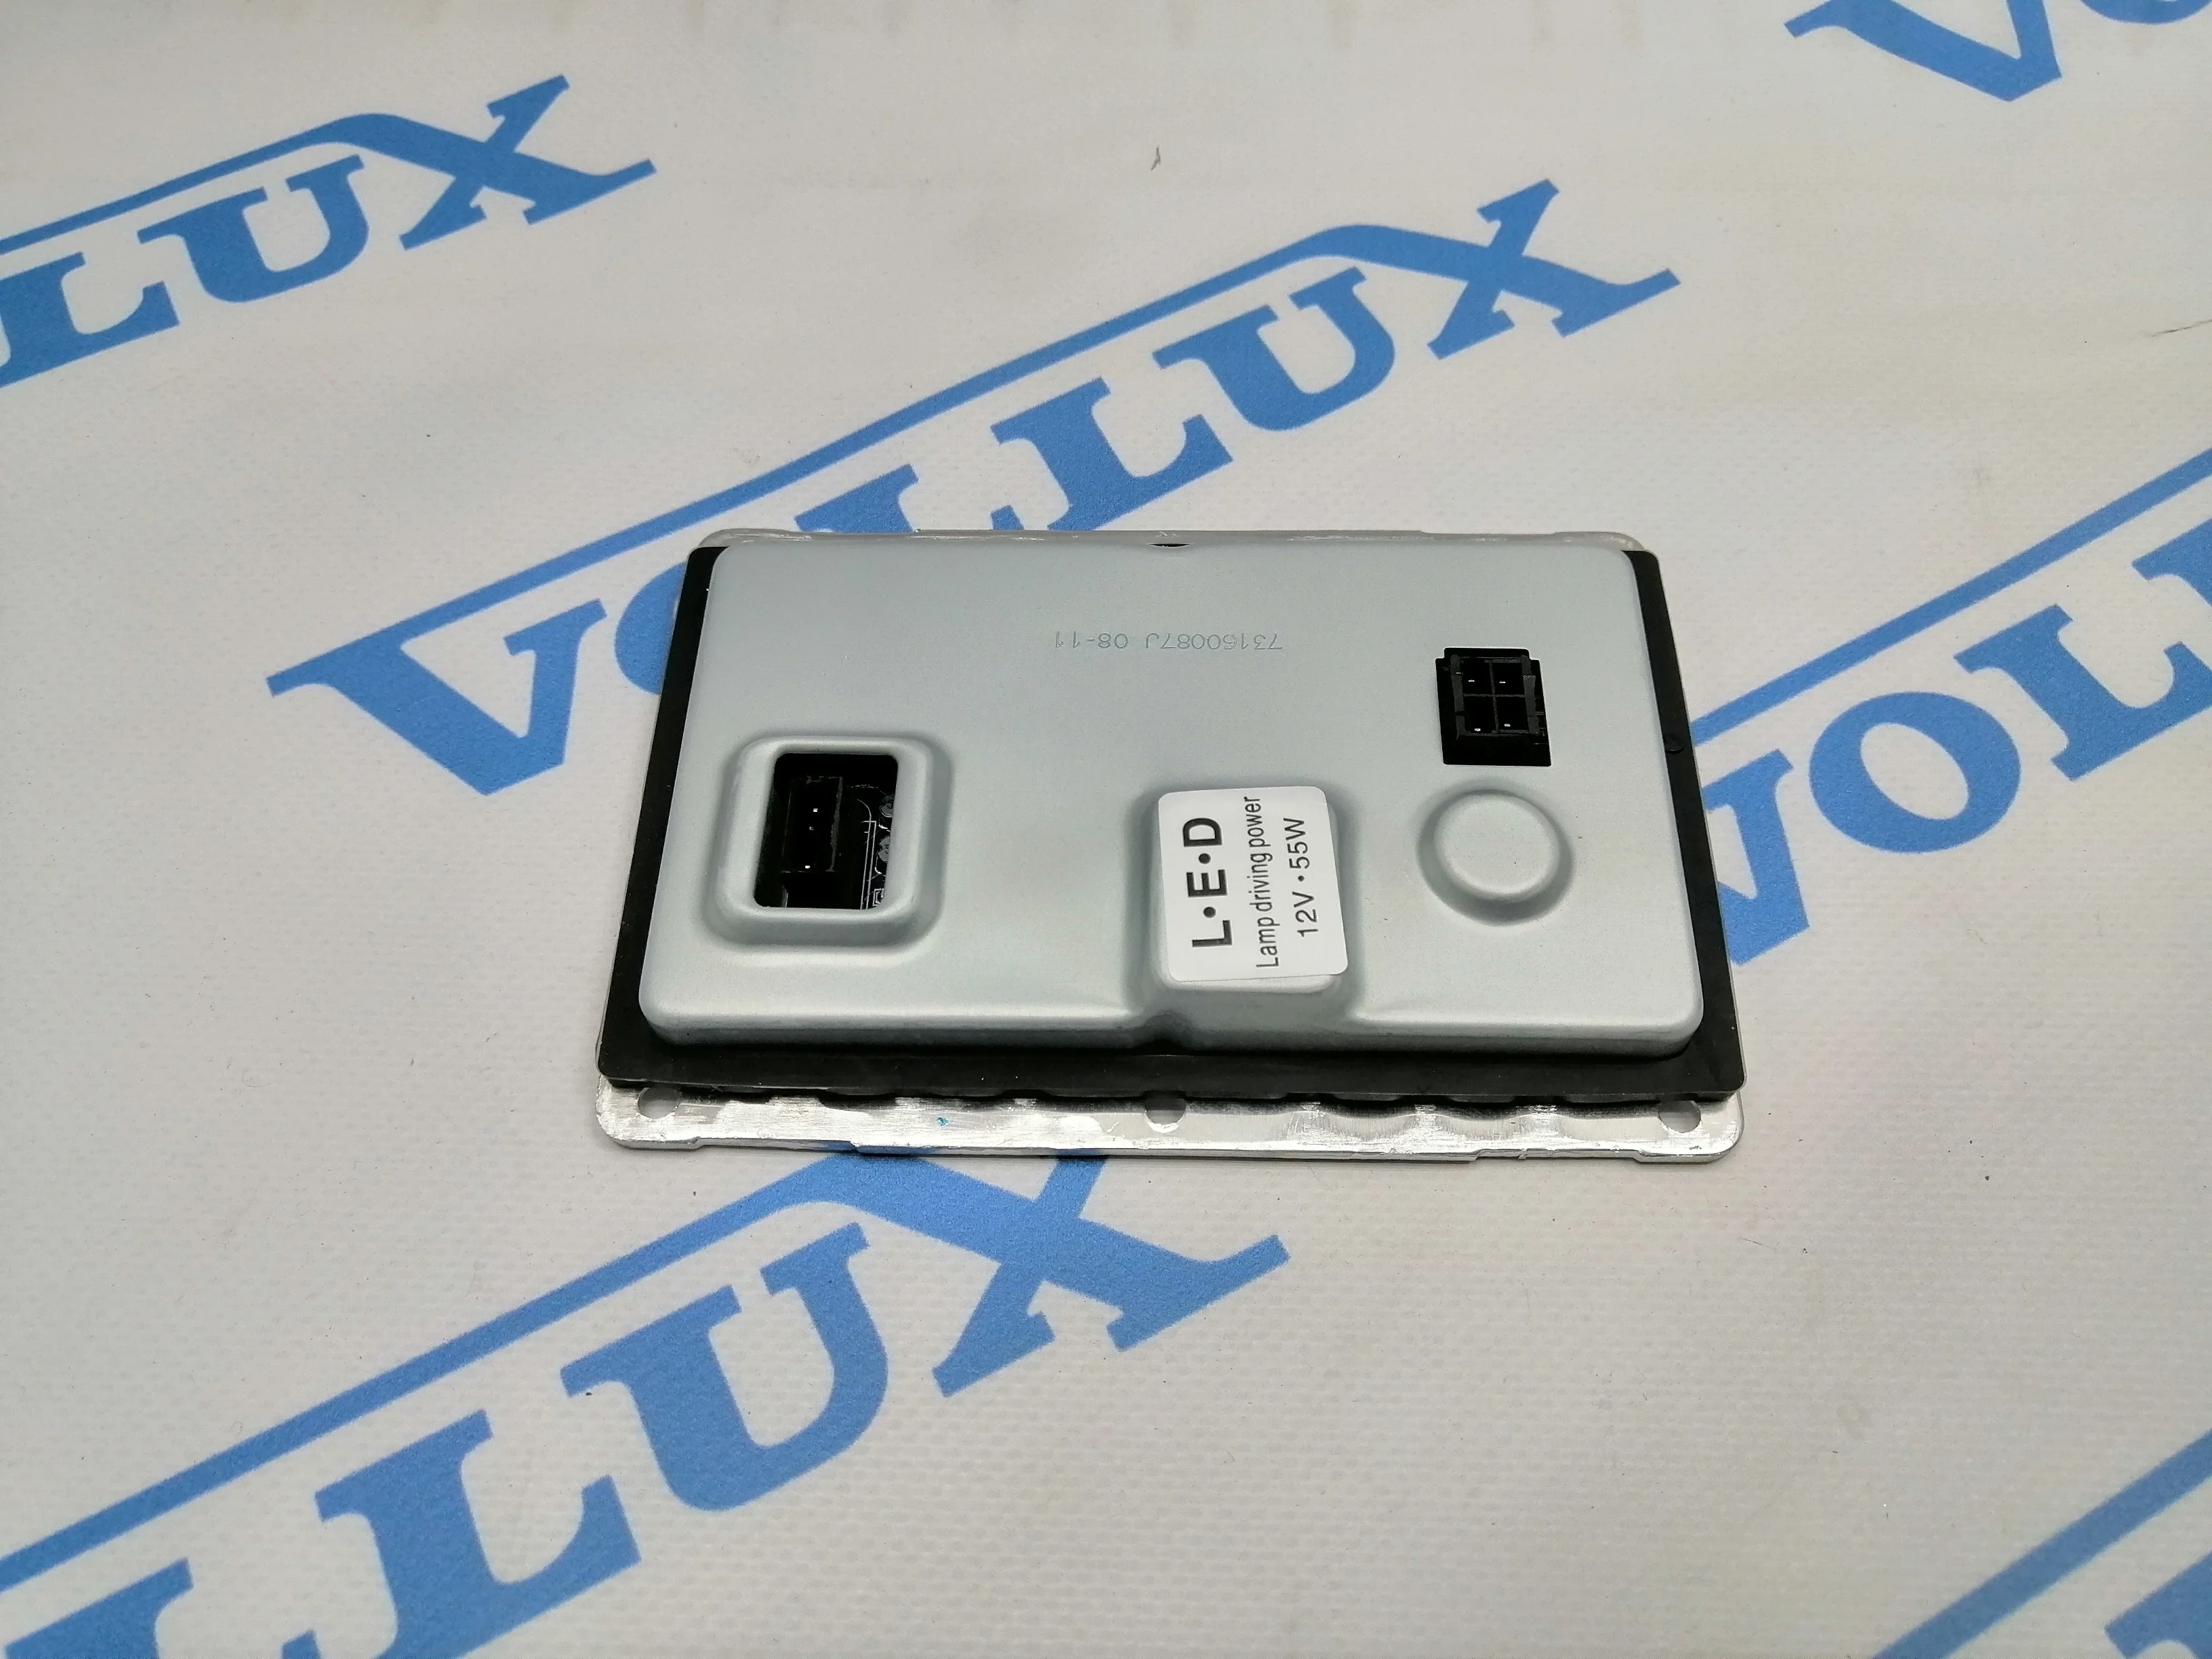 Vollux Блок поджига Xenon S60/80/V70/XC/90 99-06